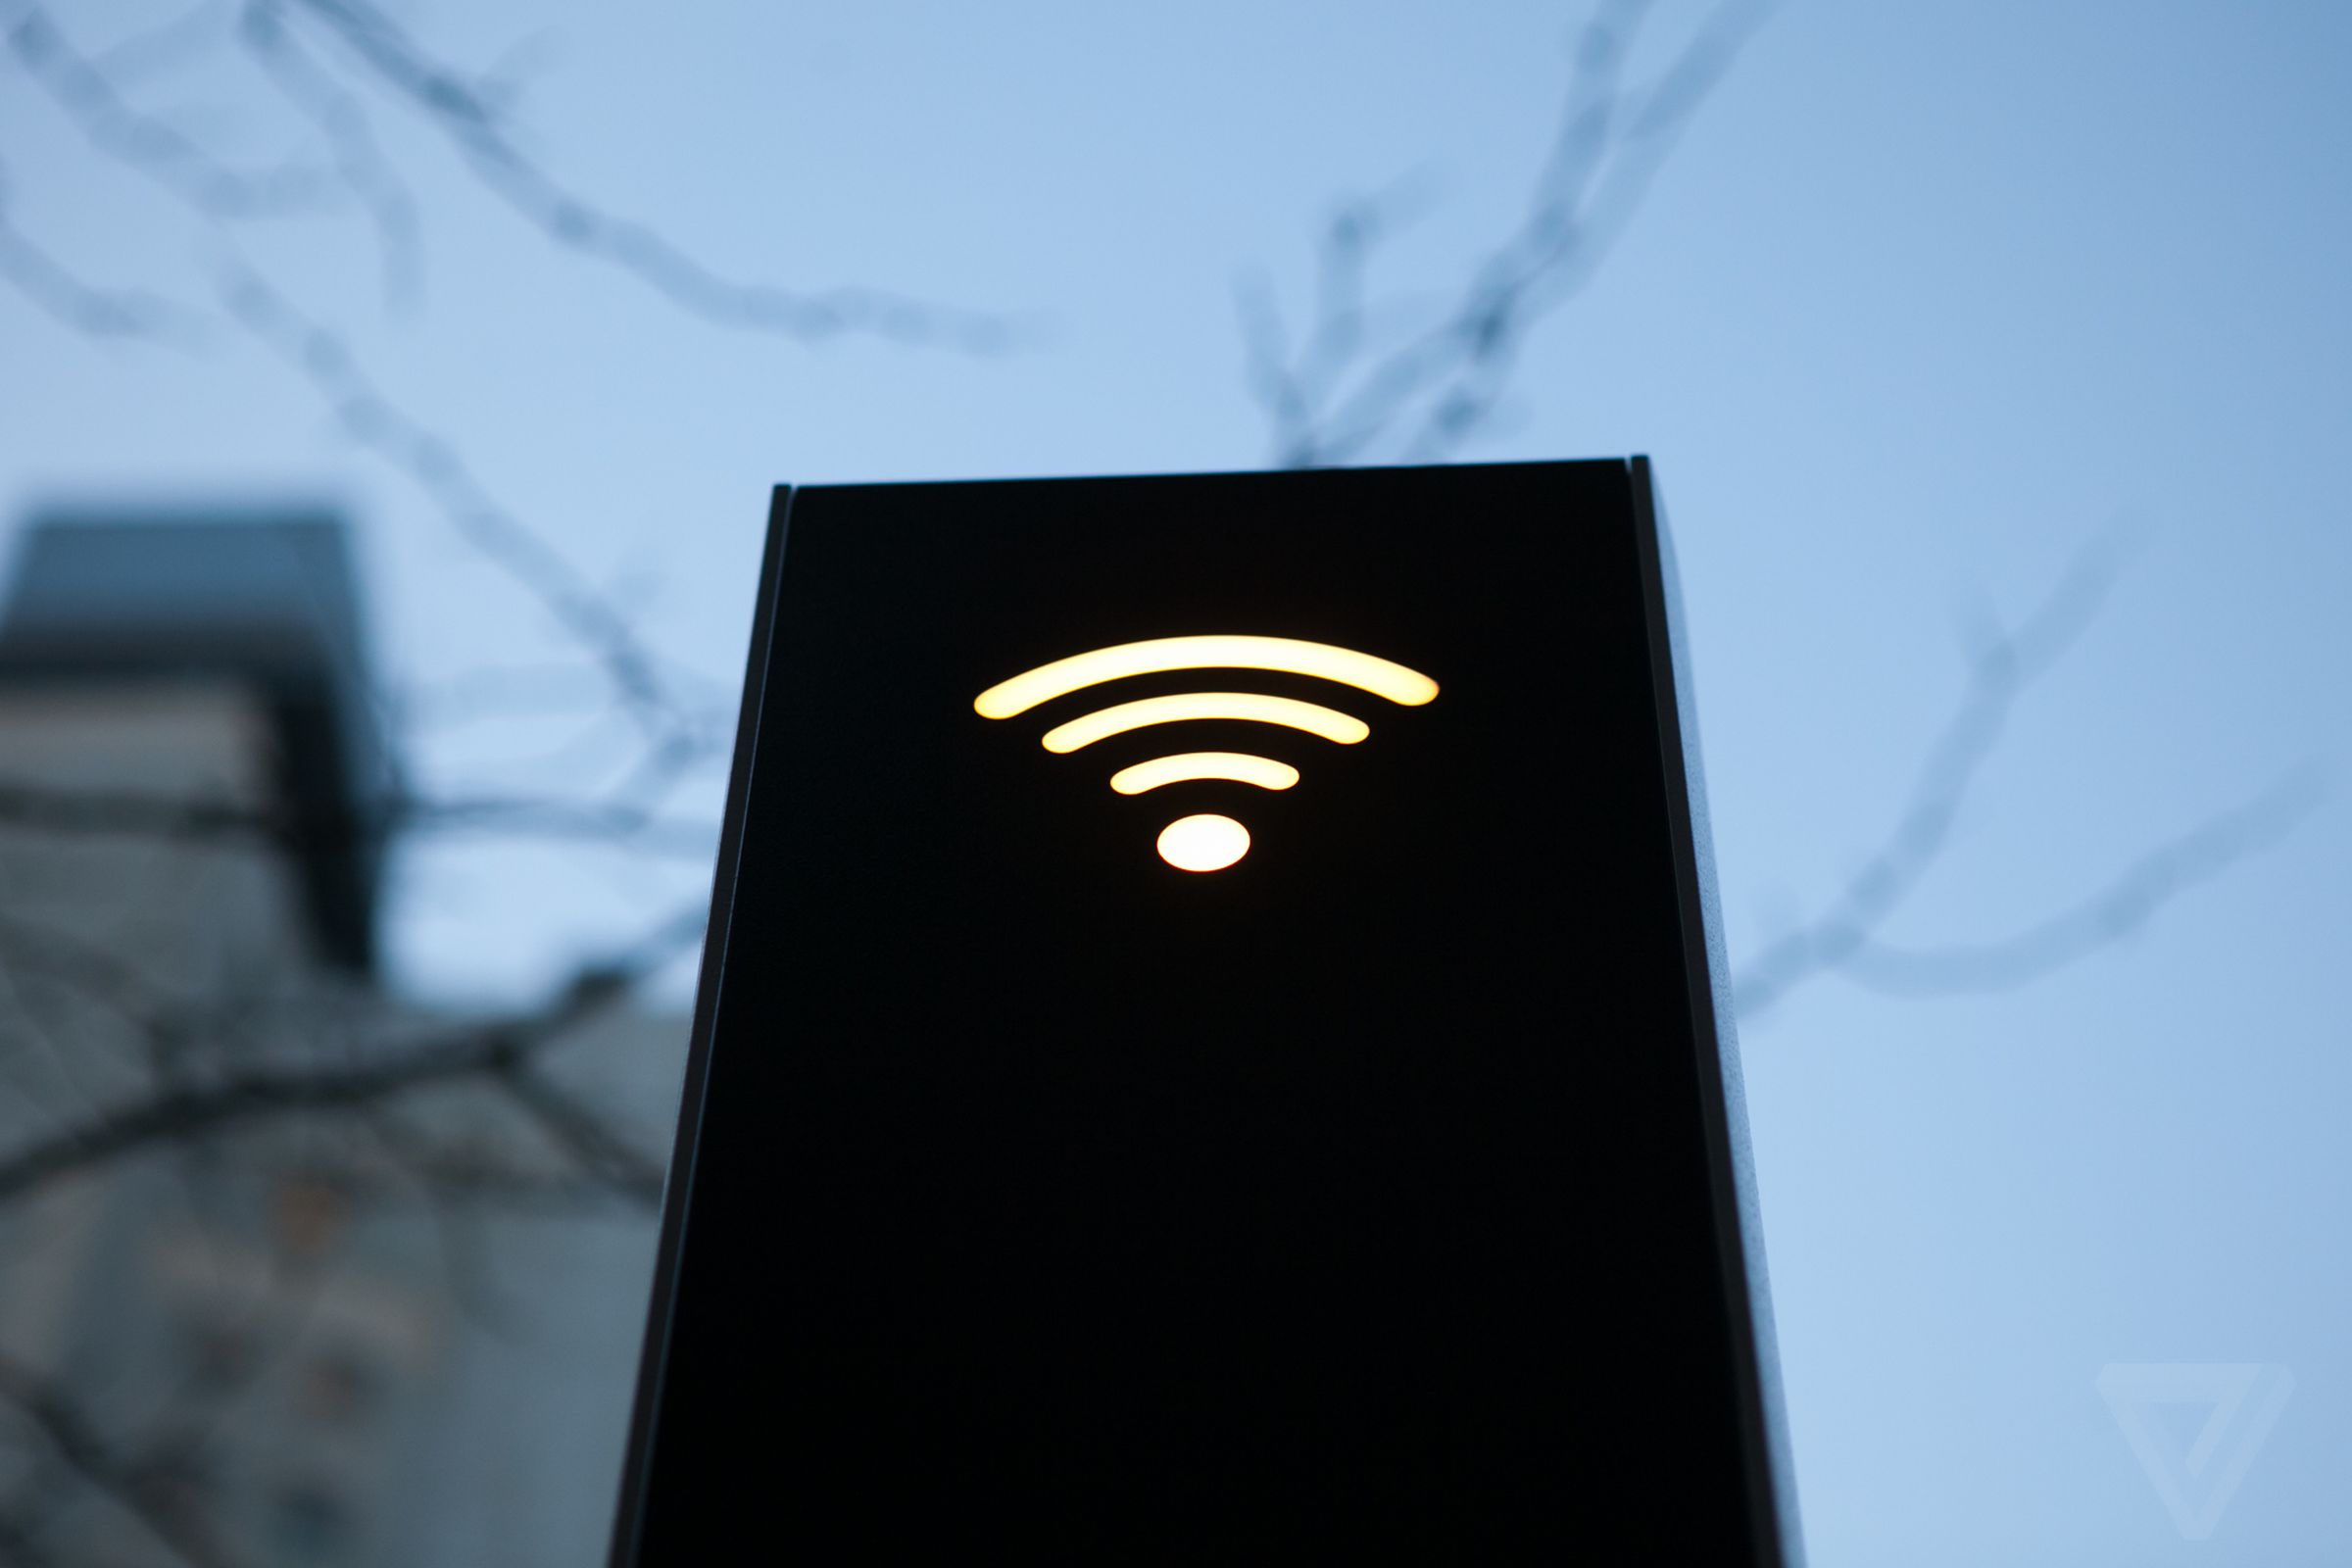 LinkNYC-free wifi-Jan2016-stock-verge-02